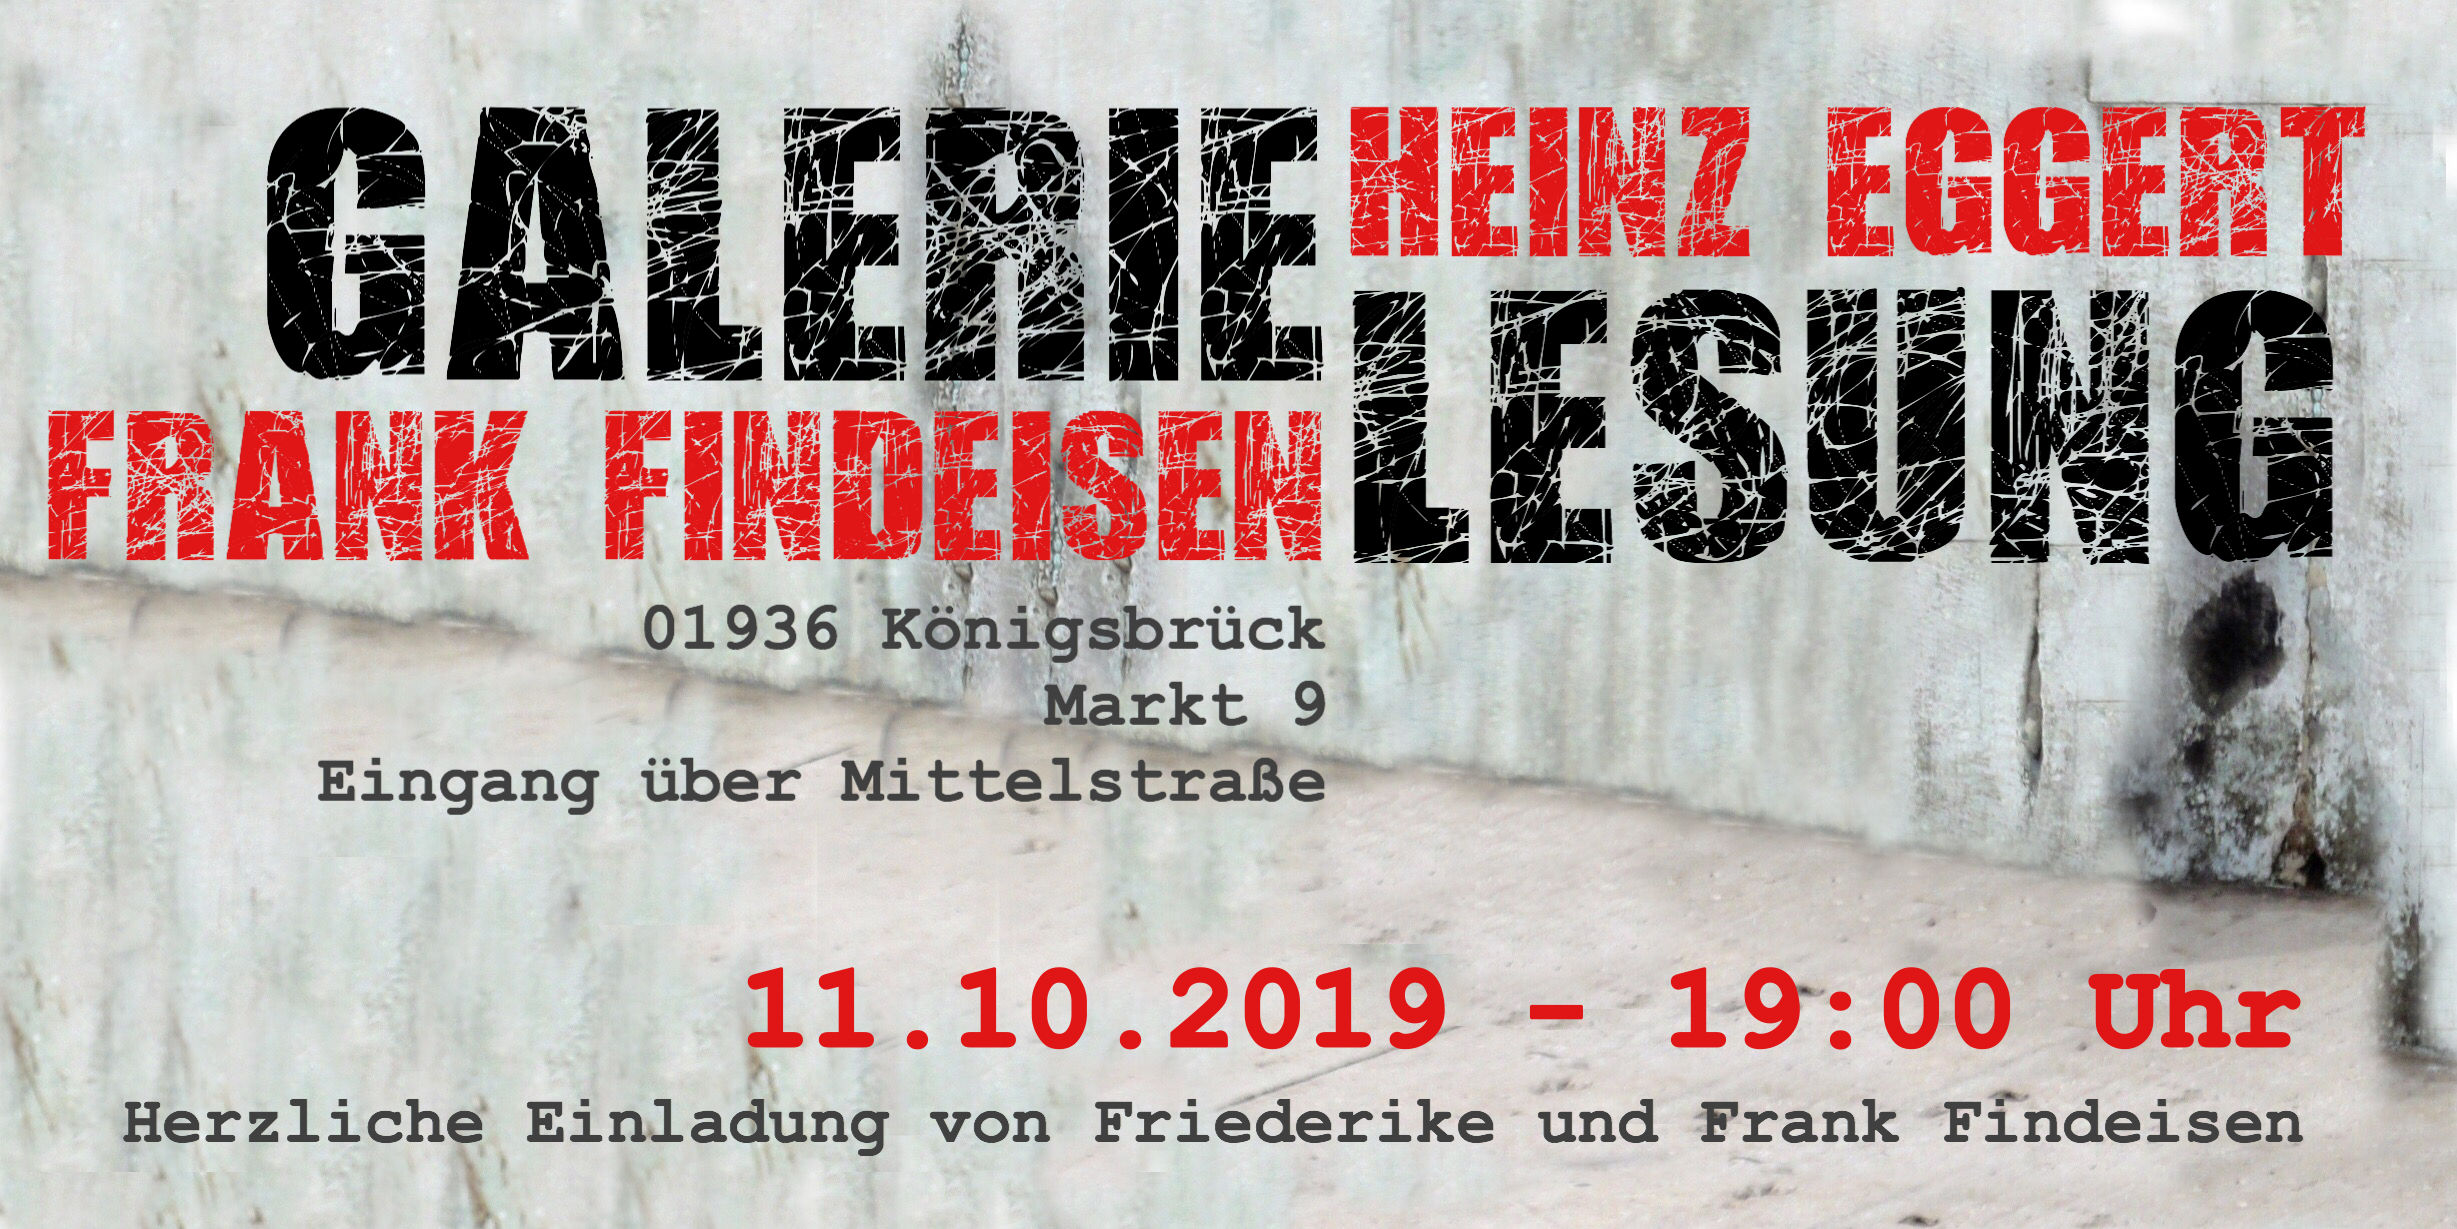 11.10.2019 Heinz Eggert 